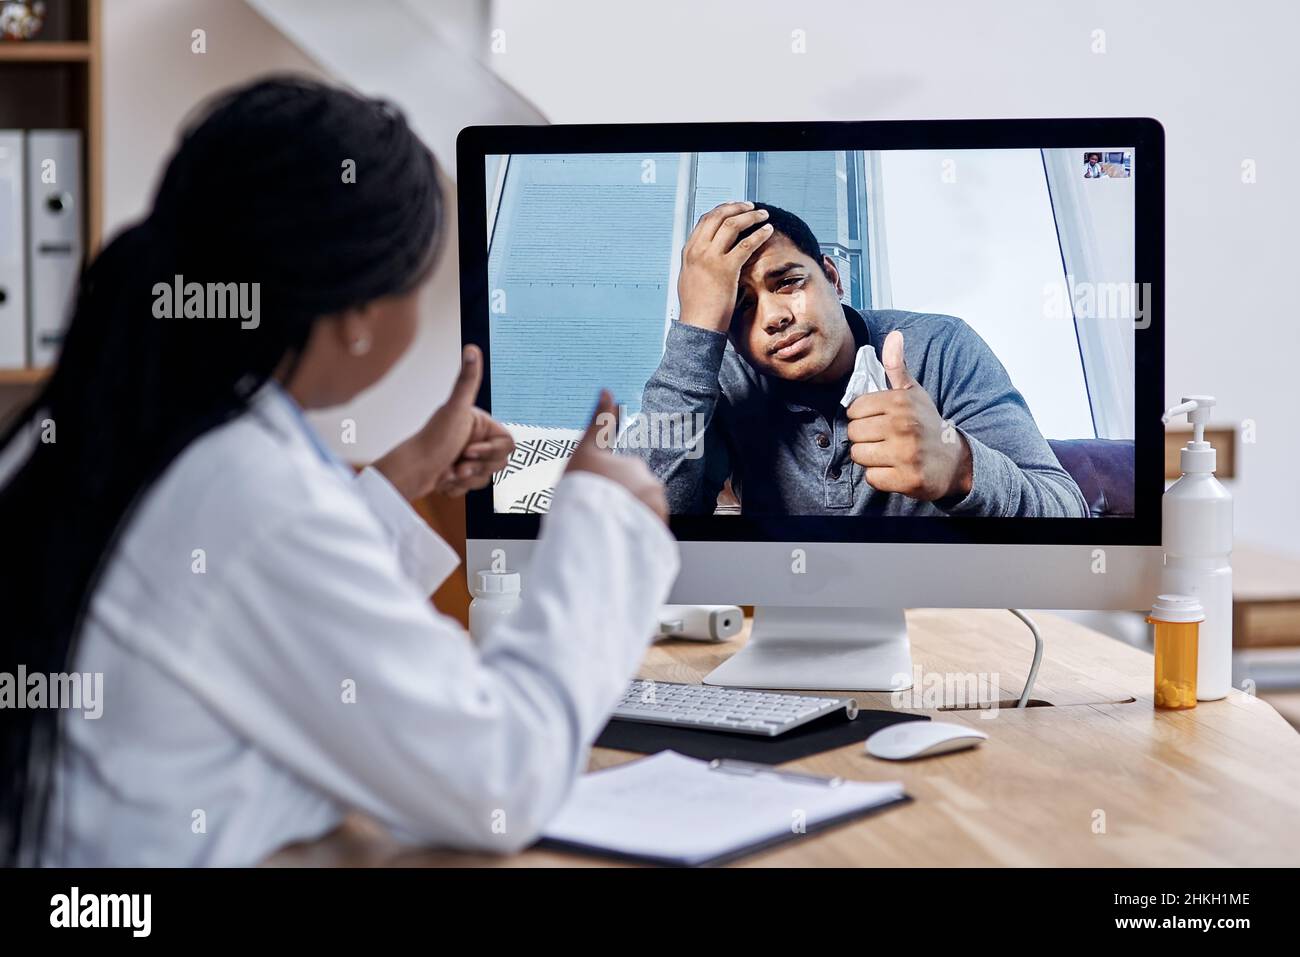 Merci pour votre aide, doc. Photo d'un jeune homme montrant les pouces vers le haut pendant un appel vidéo avec un médecin sur un ordinateur. Banque D'Images